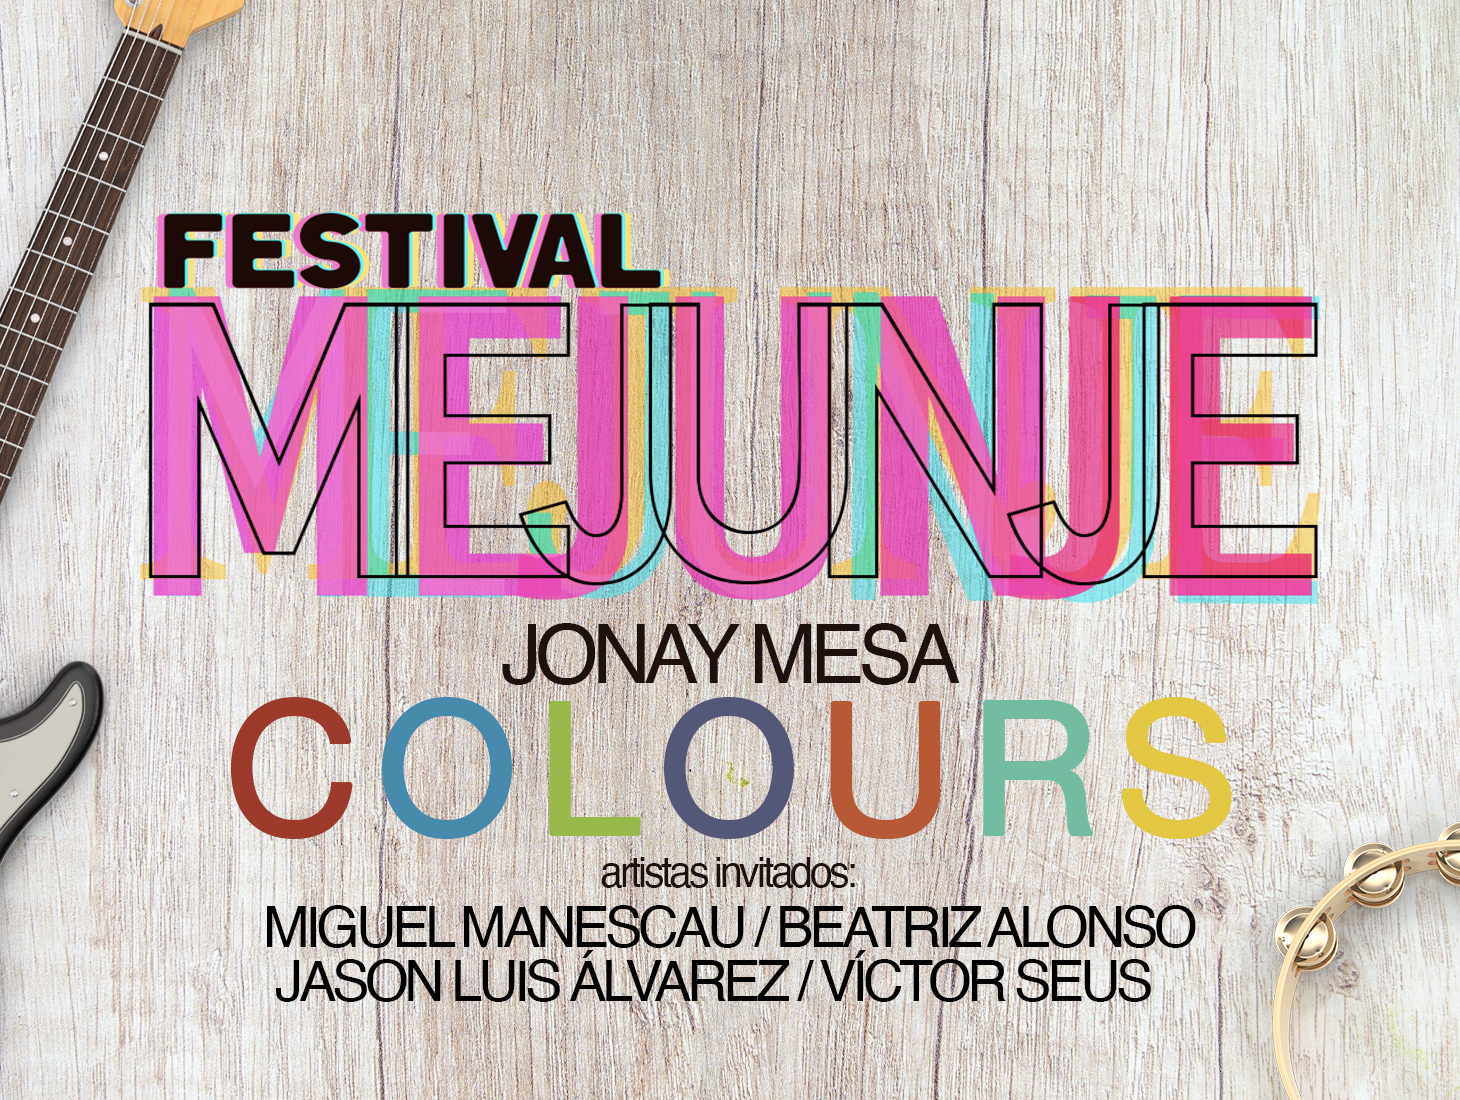 festival-mejunje-jonay-mesa-5f324dbf898a3.jpeg